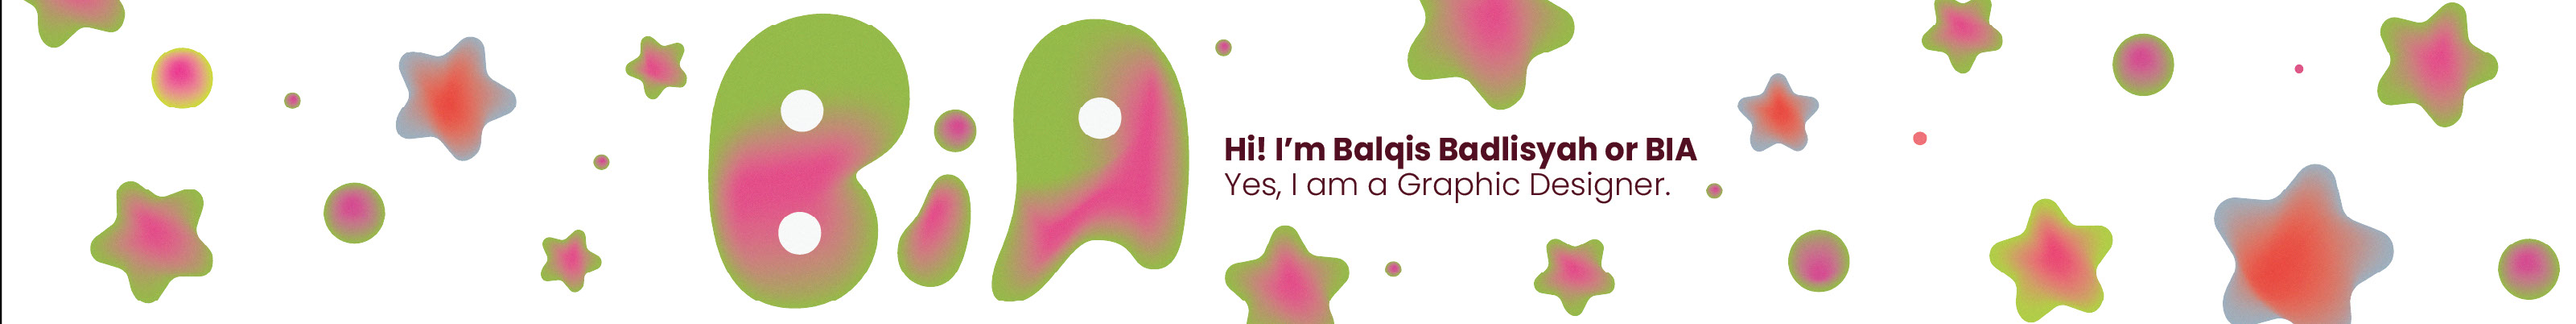 Balqis Badlisyah's profile banner